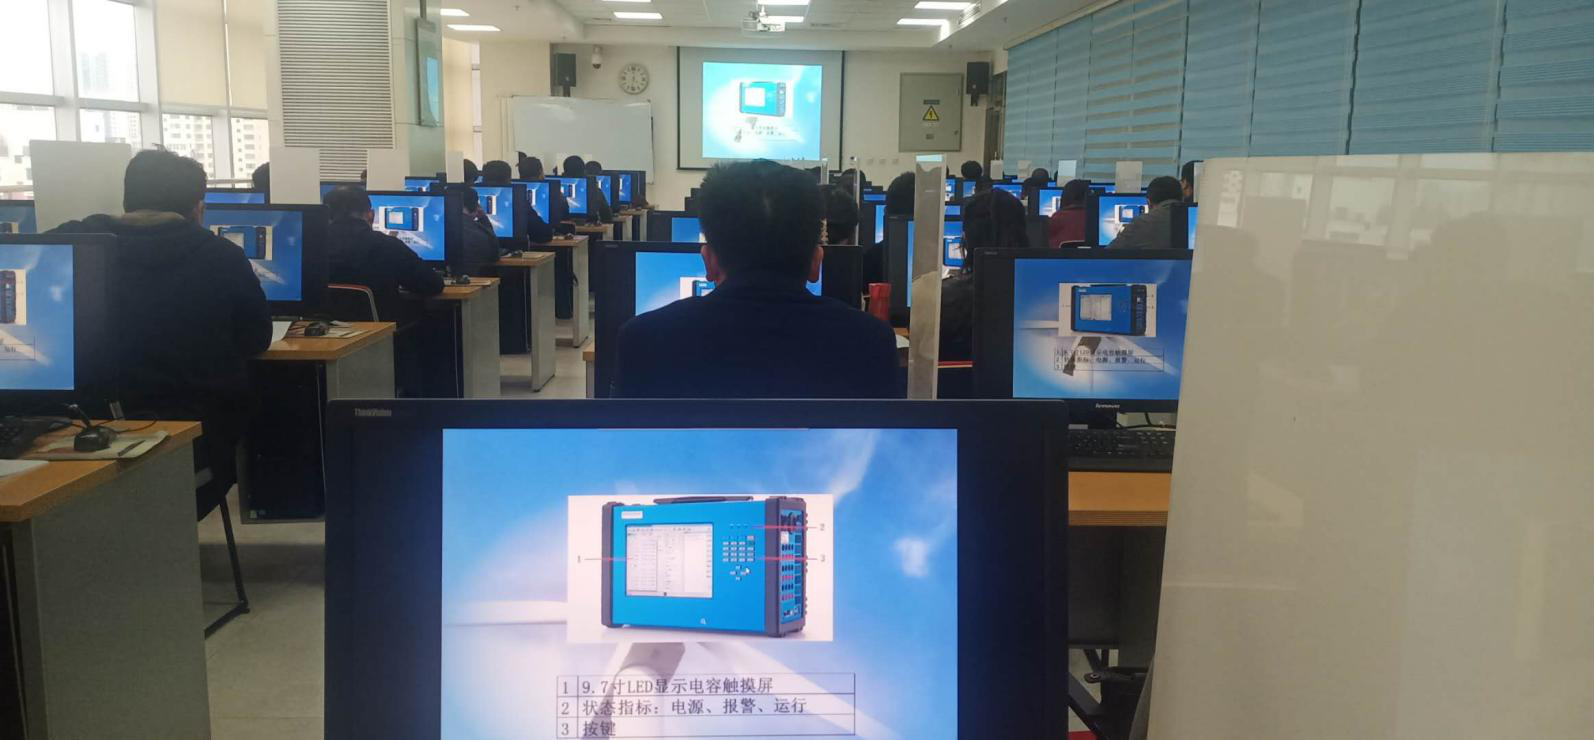 تم عقد تدريب KF86 بنجاح في مقاطعة قانسو الصينية.